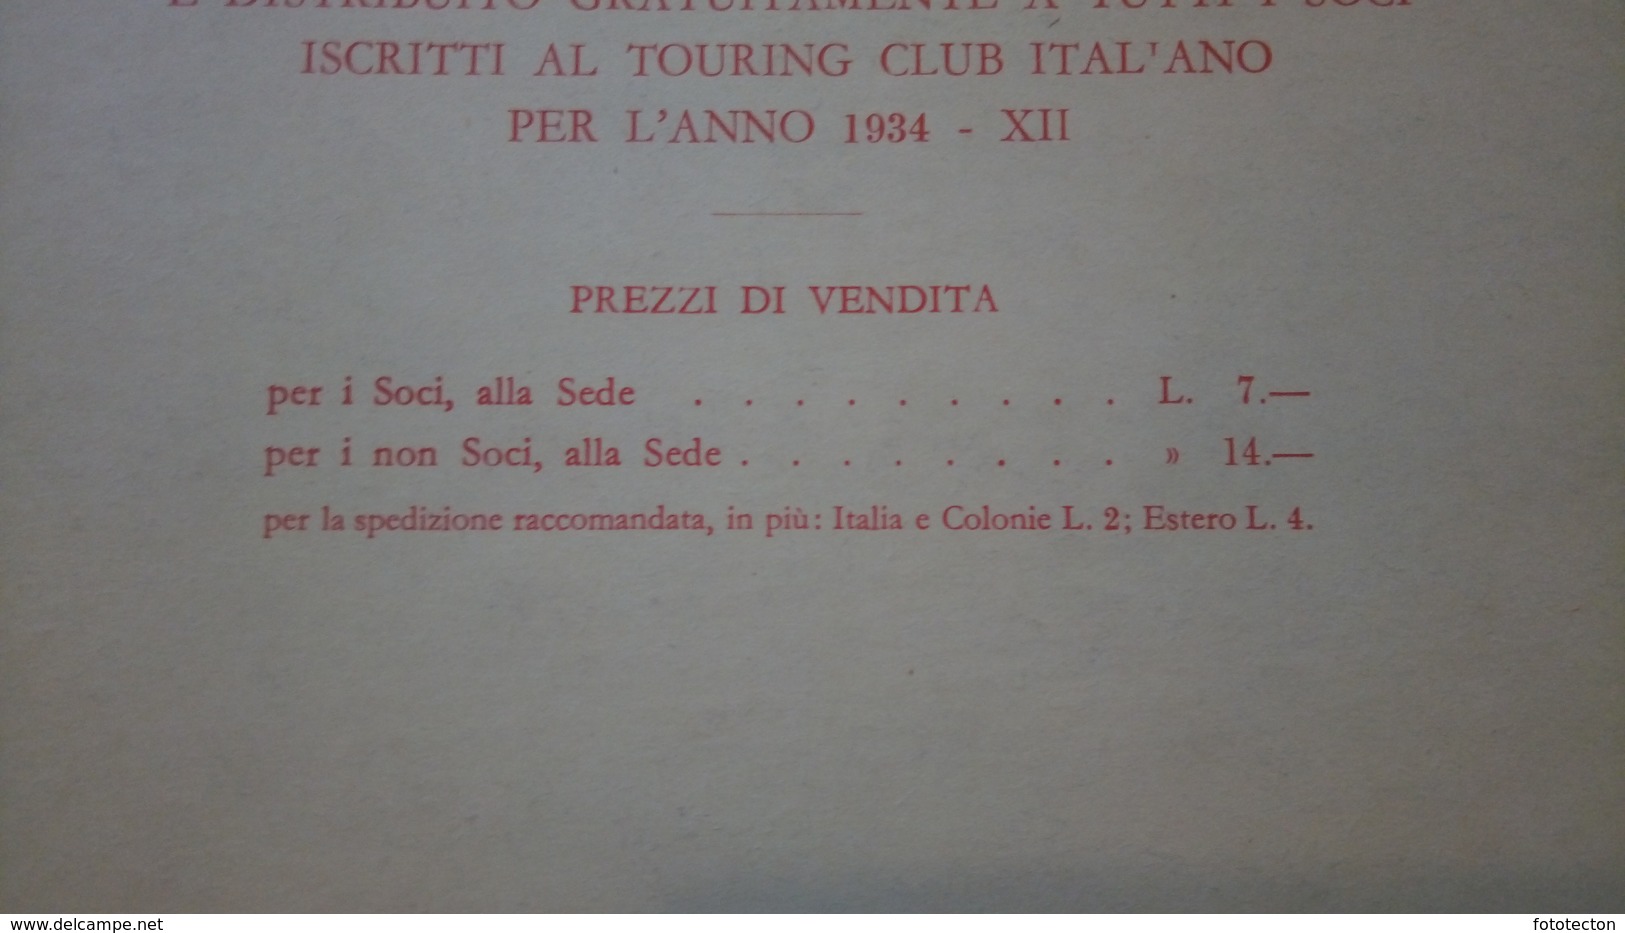 Guida pratica ai luoghi di soggiorno e di cura d'Italia - Le stazioni alpine,Piemonte e Lombardia 1934 "Le vie d'Italia"